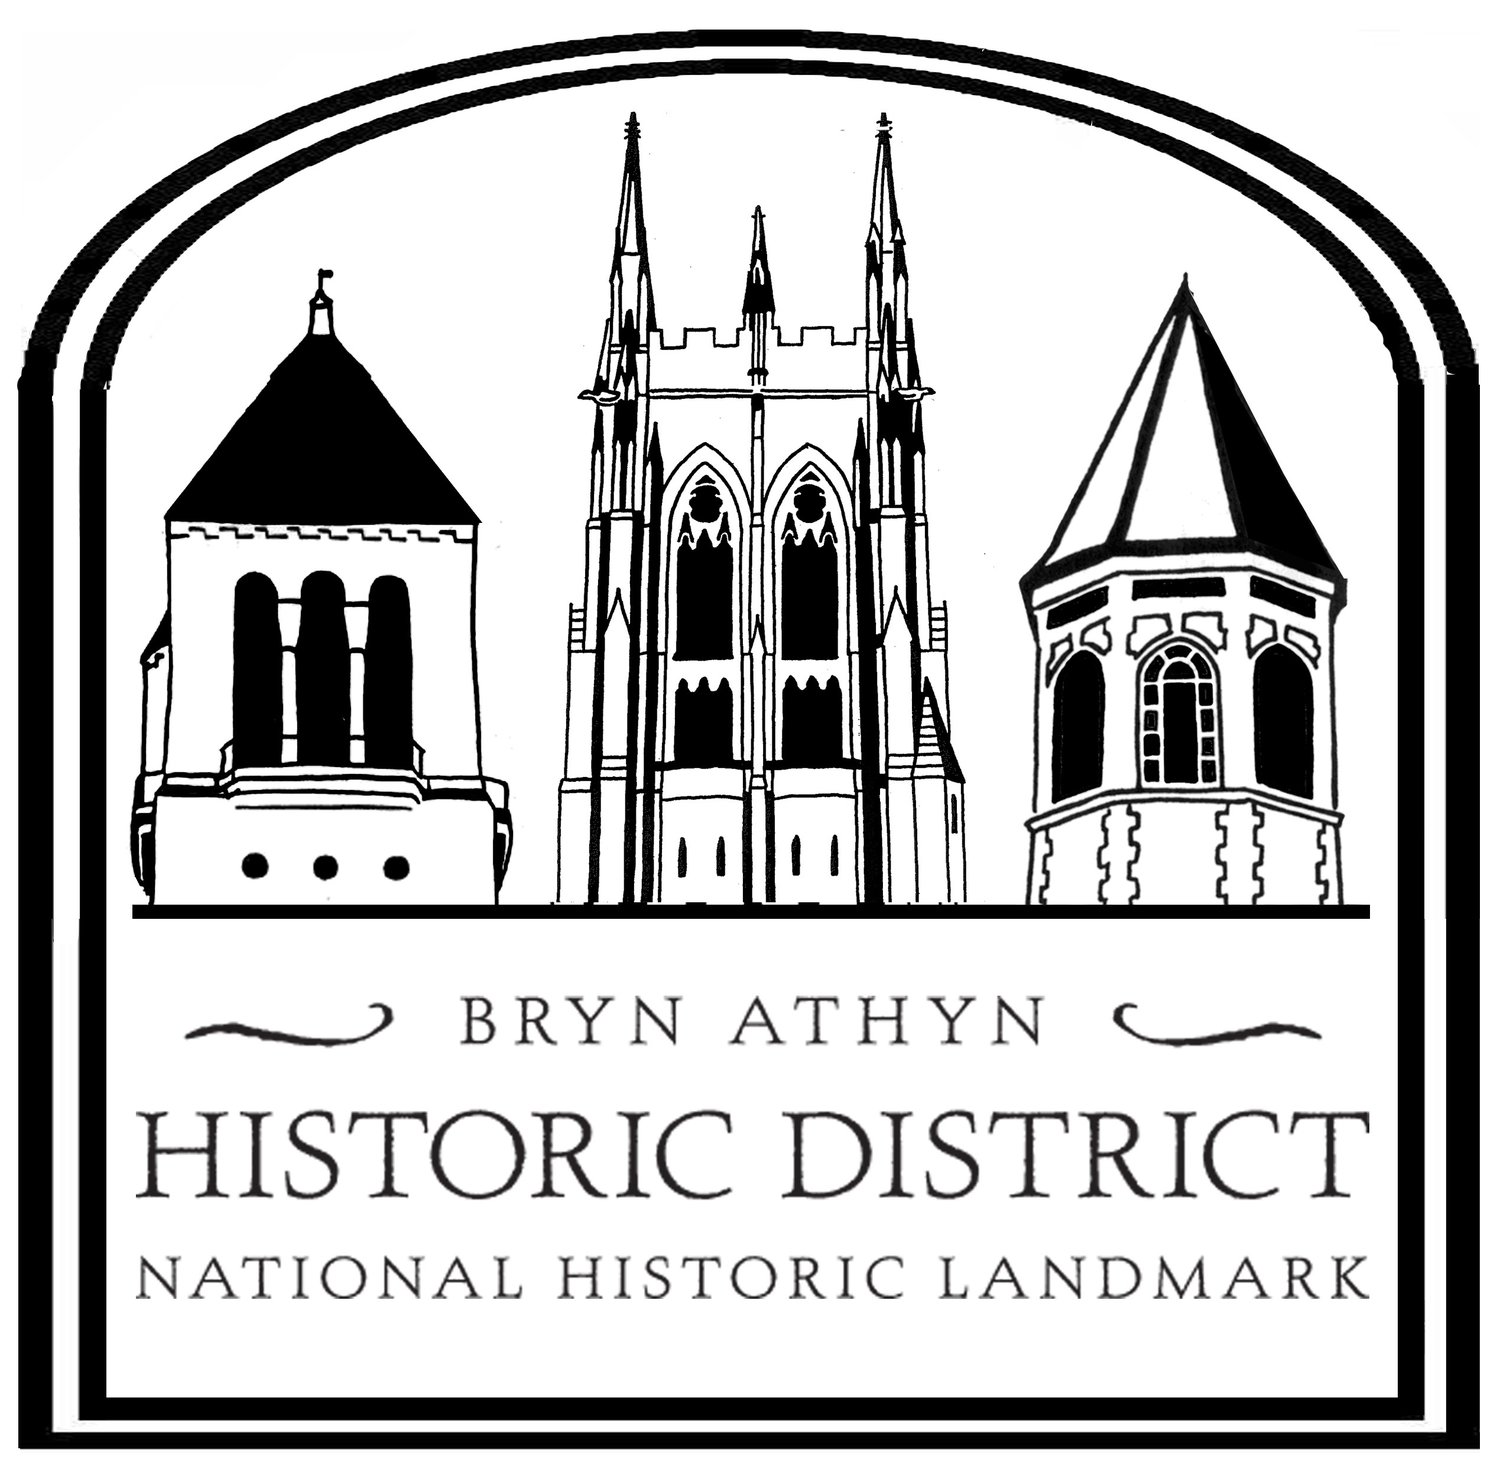 Bryn Athyn Historic District